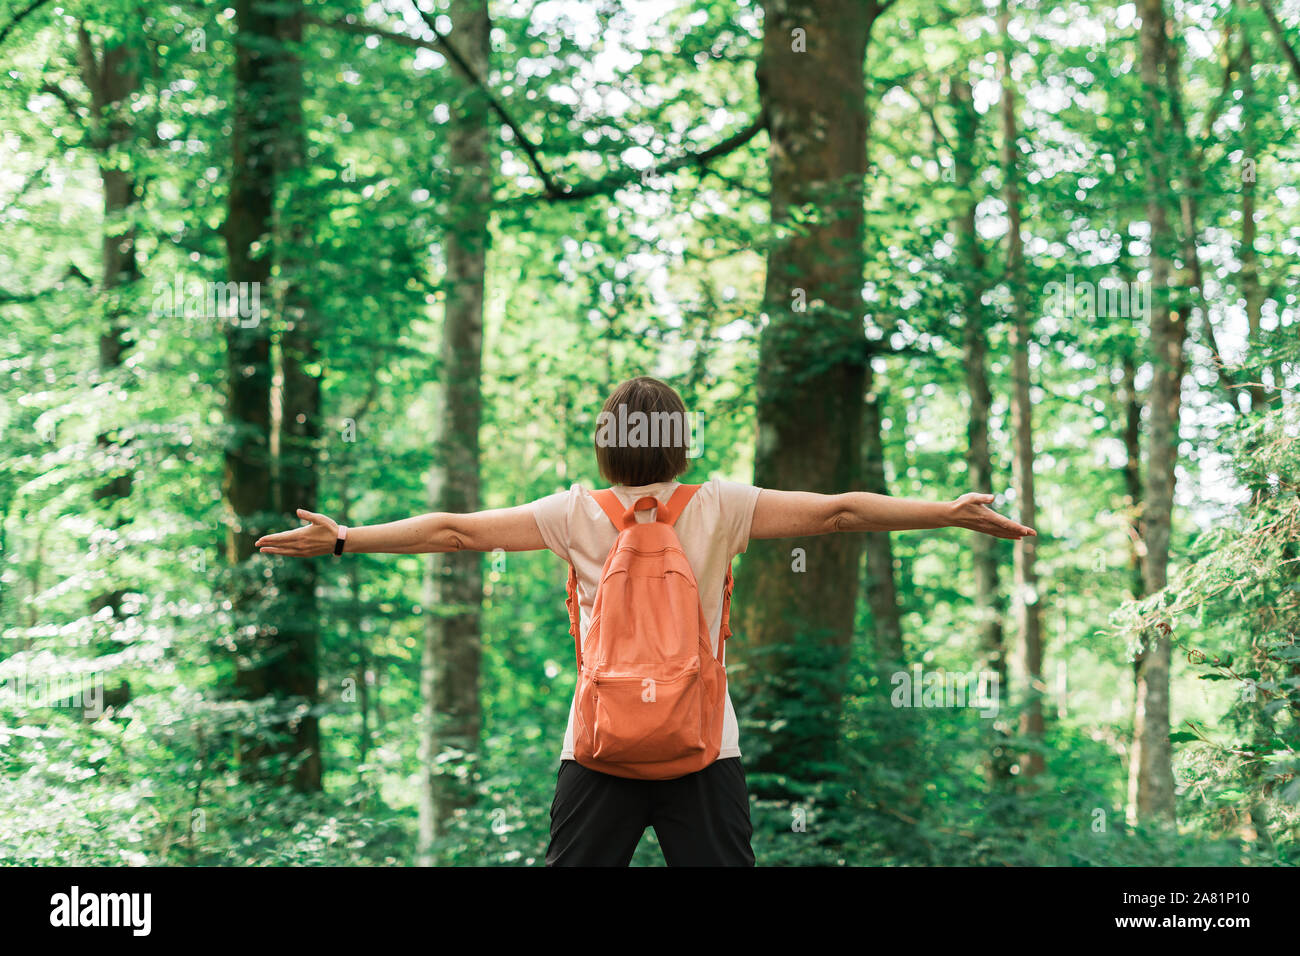 Excursionista hembra con una amplia propagación de manos en bosque, vista trasera de la mujer disfruta de actividad al aire libre Foto de stock